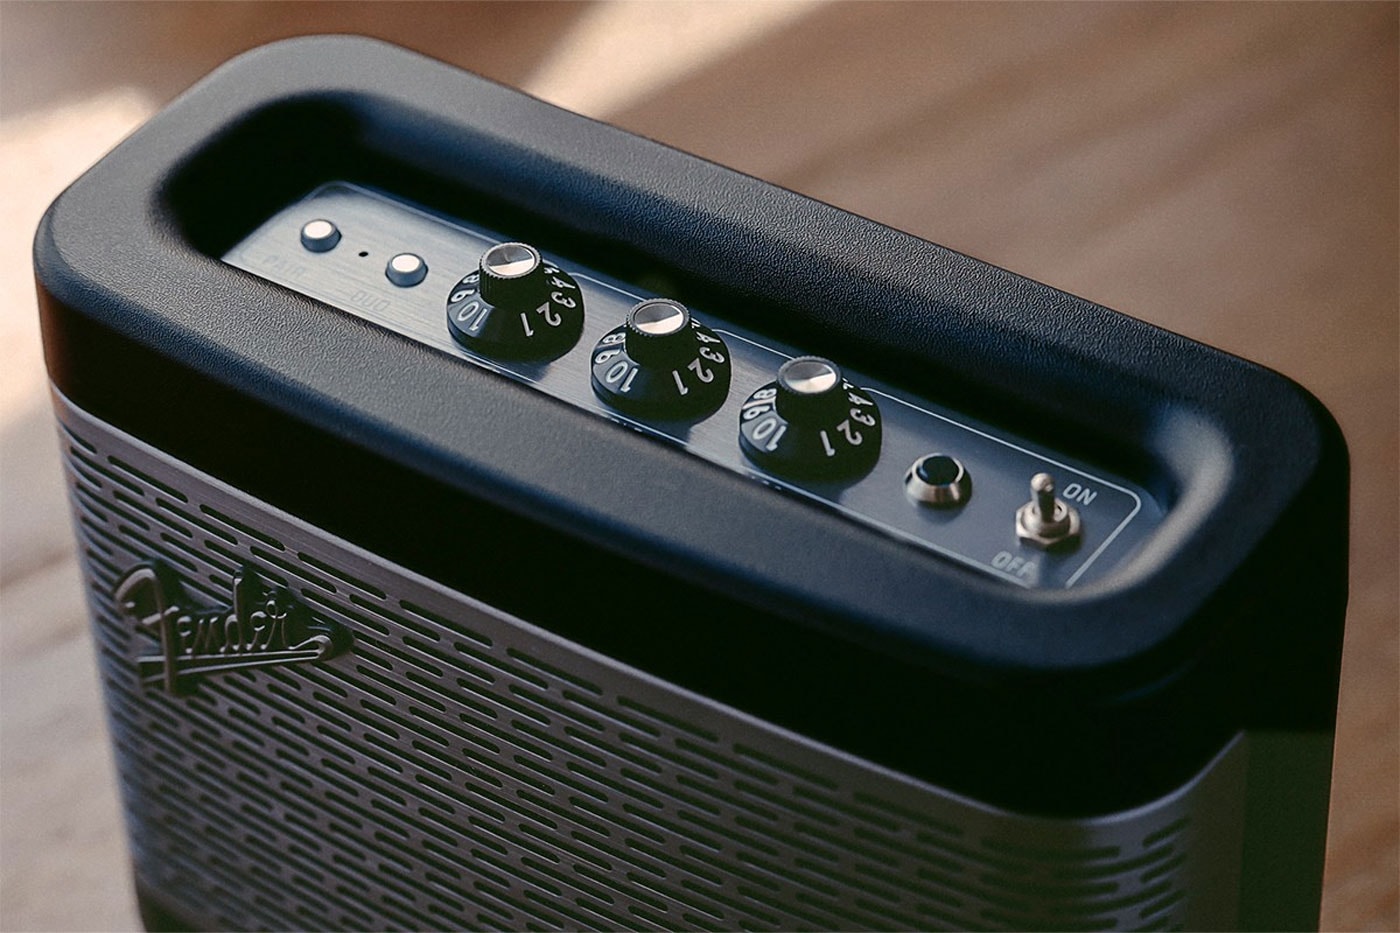 フェンダーから小型ブルートゥーススピーカー ニューポート2が登場 Fender Introduces Newport 2 Portable Bluetooth Speakers asia BT 5.0 party mode silverface guitar amp release info date price